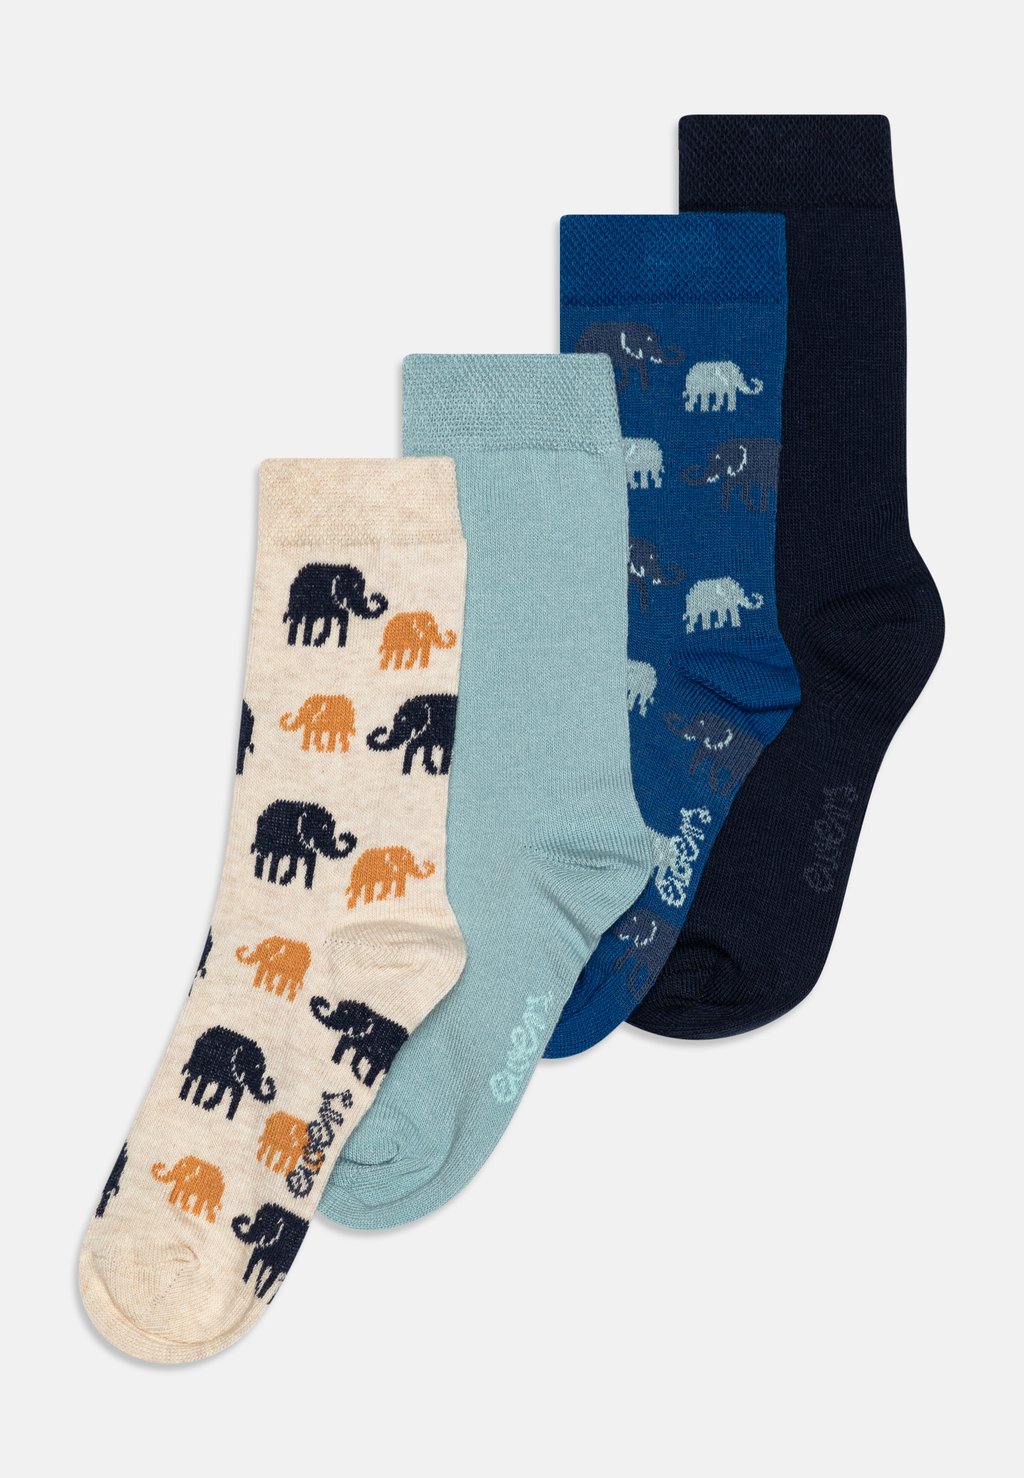 Носки KIDS ELEPHANTS UNISEX 4 PACK Ewers, цвет blue носки kids elephants unisex 4 pack ewers цвет blue